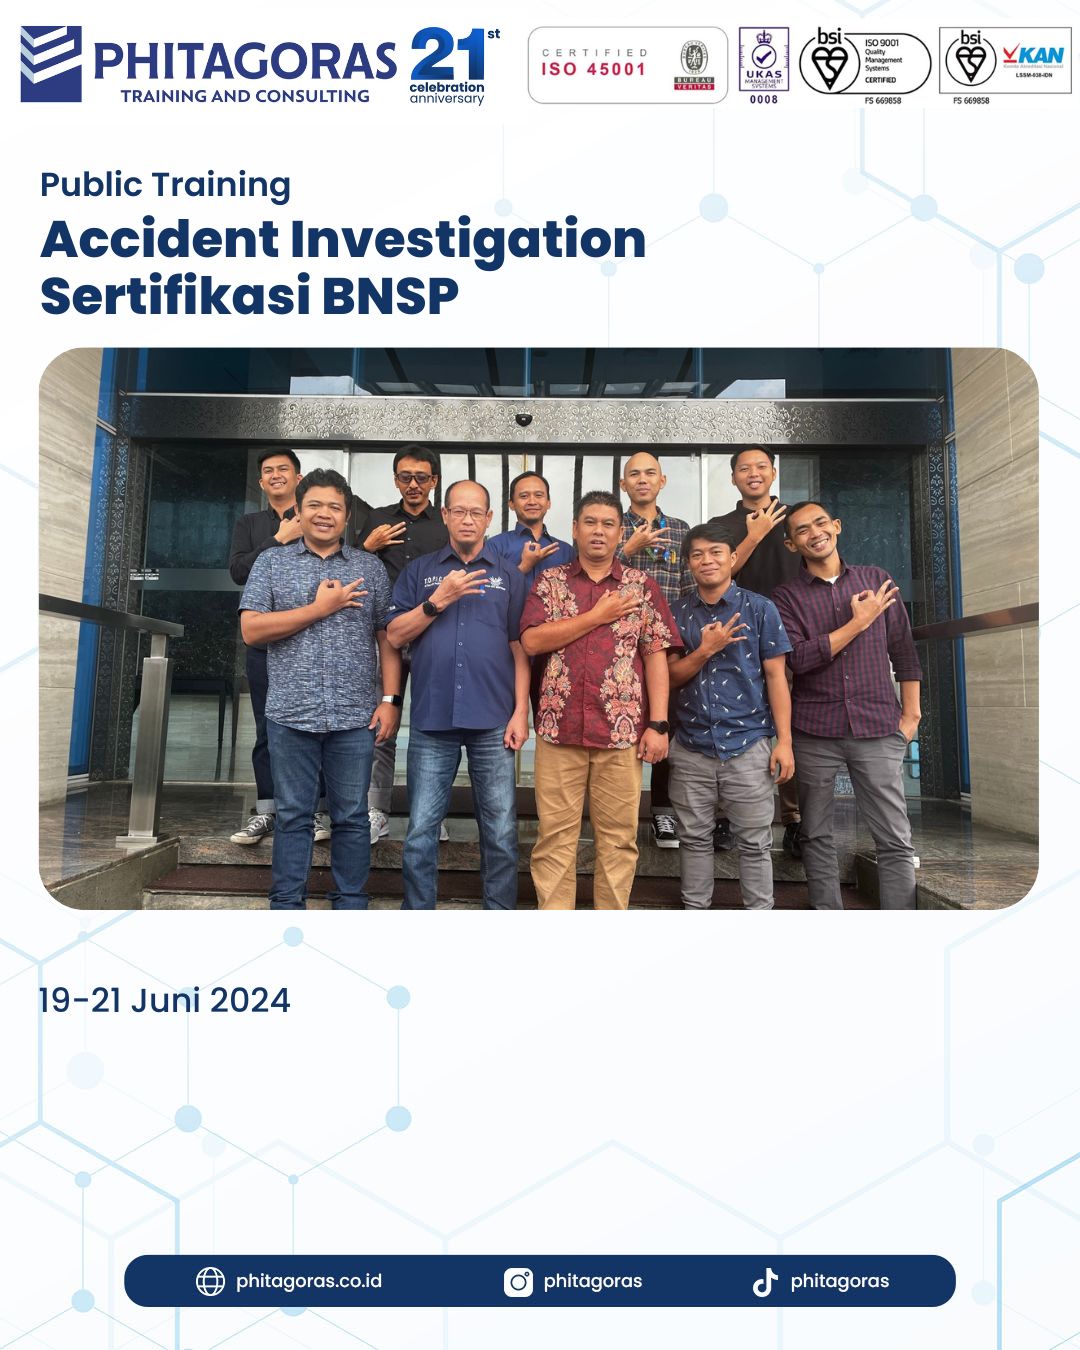 Public Training Accident Investigation Sertifikasi BNSP 19-21 Juni 2024